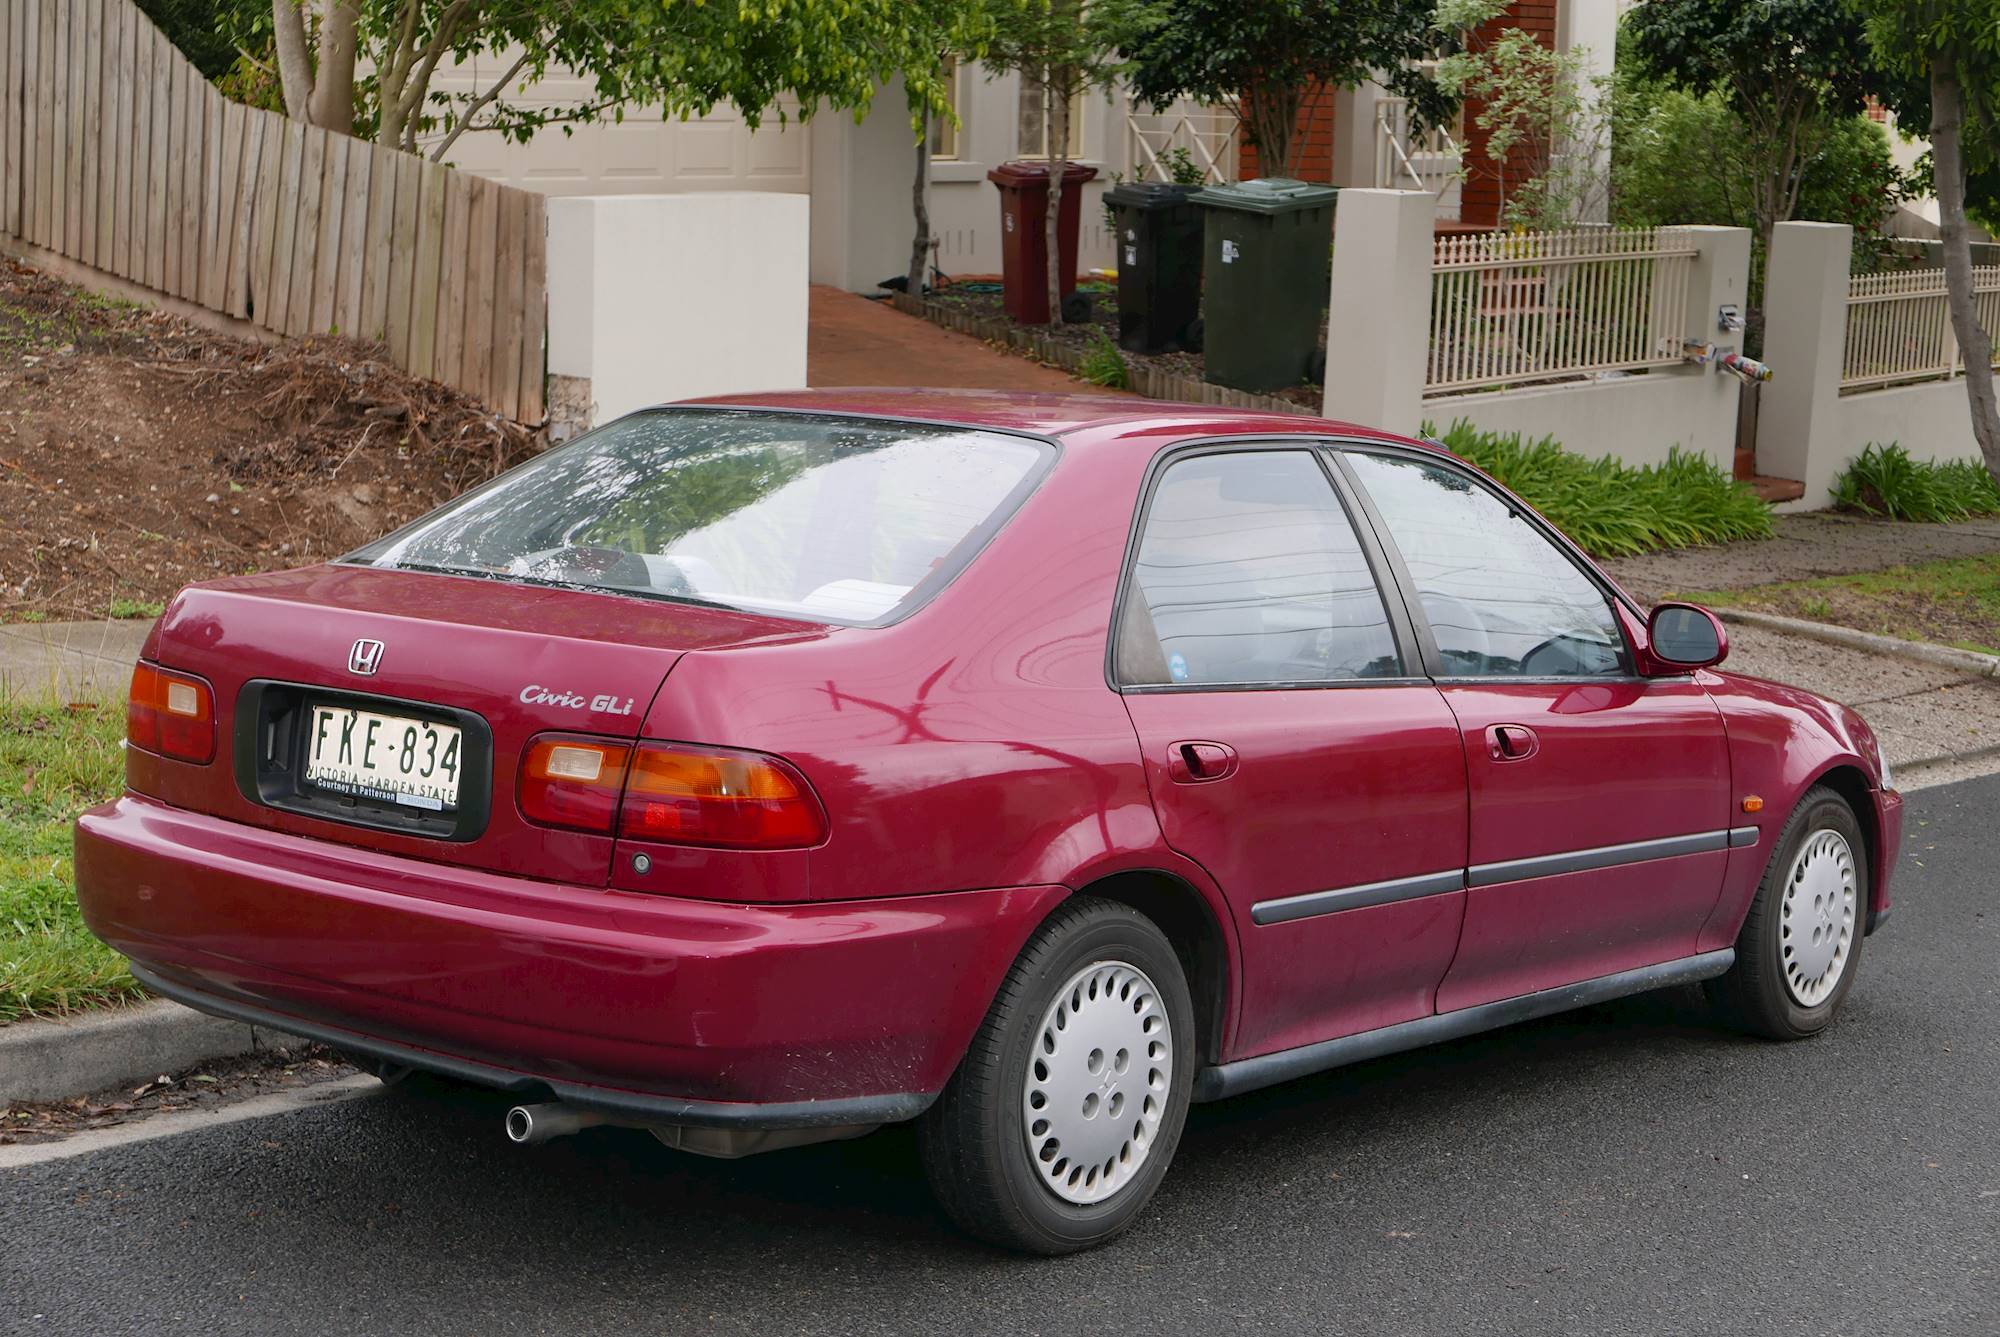 Honda civic 1993 lx